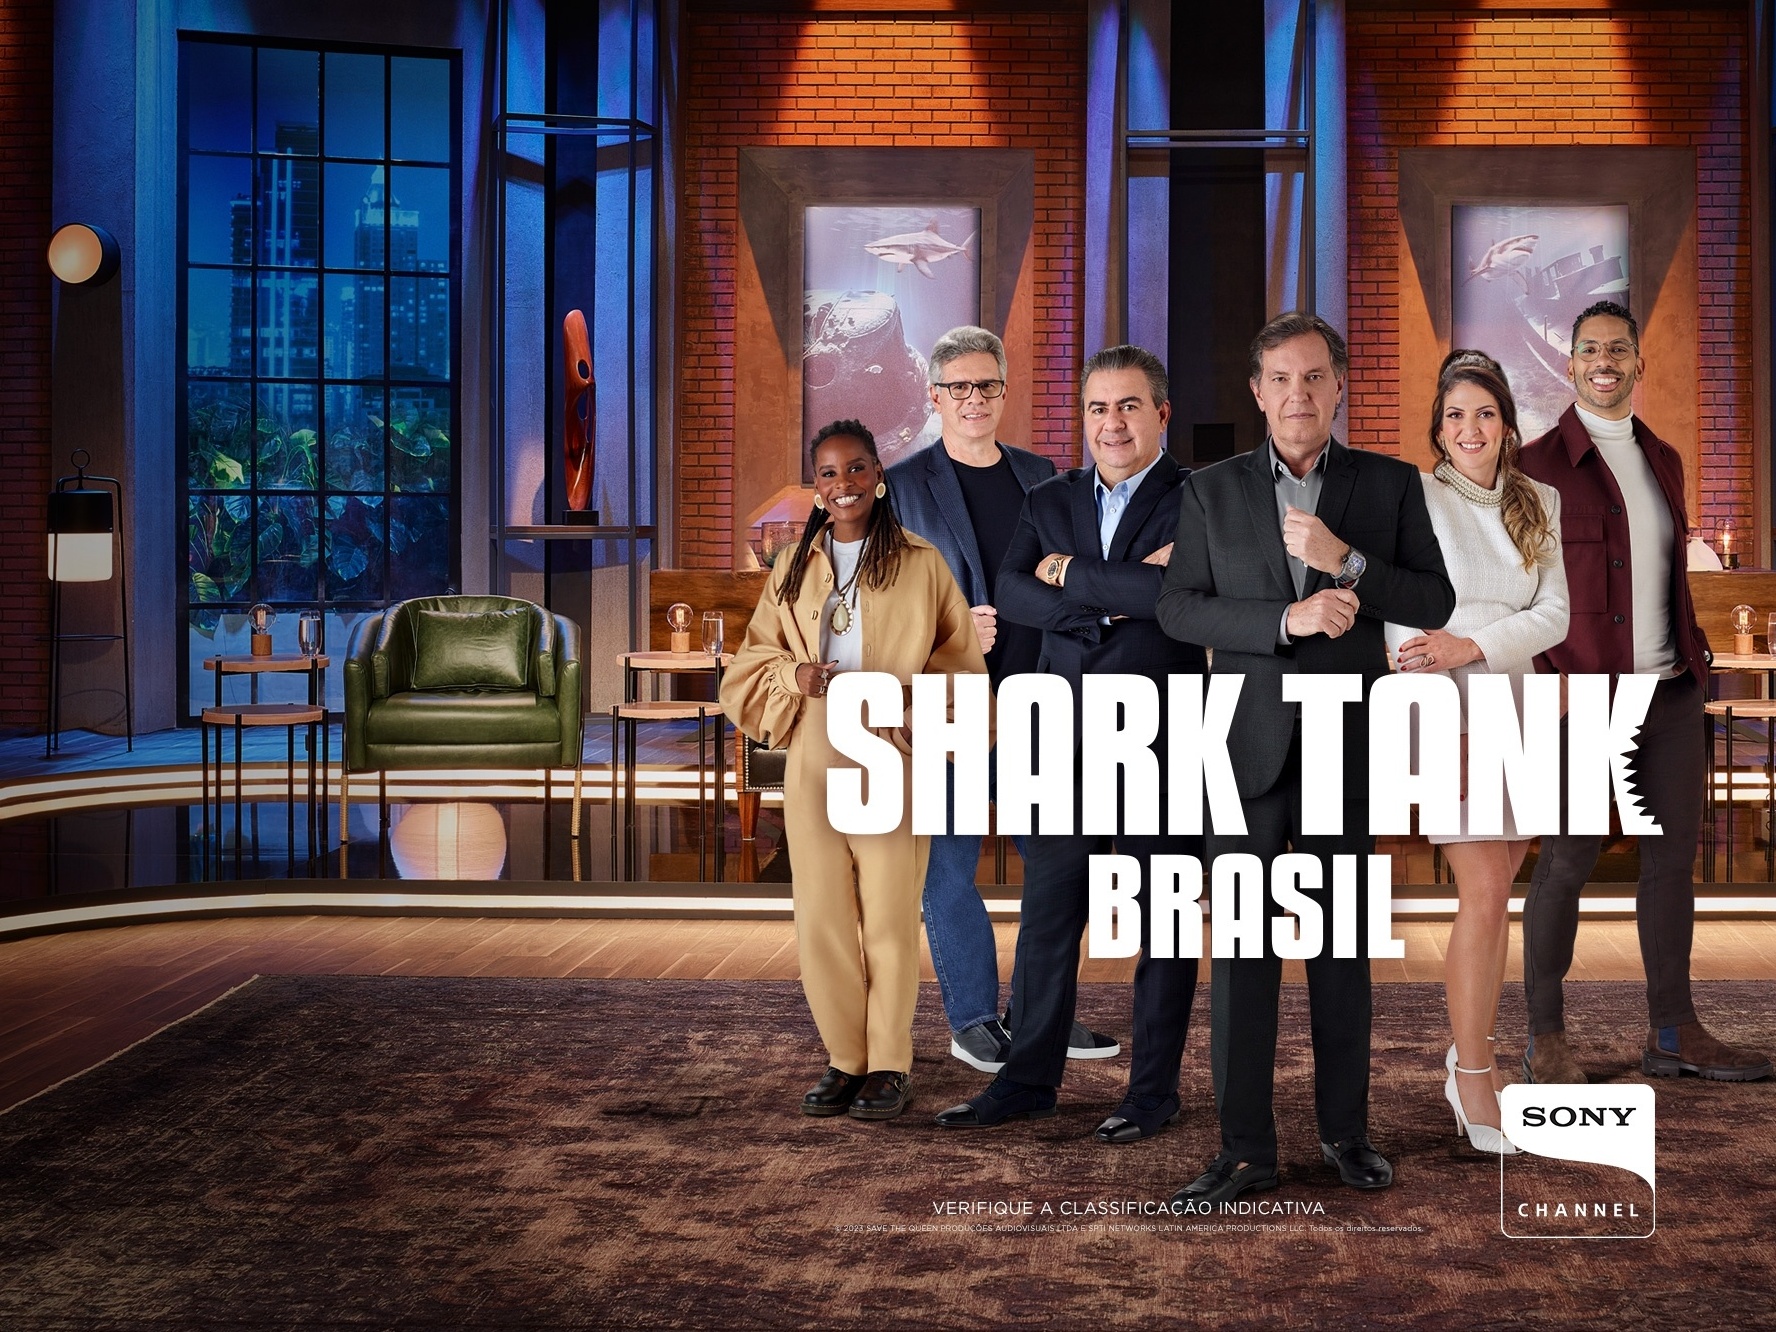 Sony Channel inicia gravações da nova temporada de “Shark Tank Brasil”